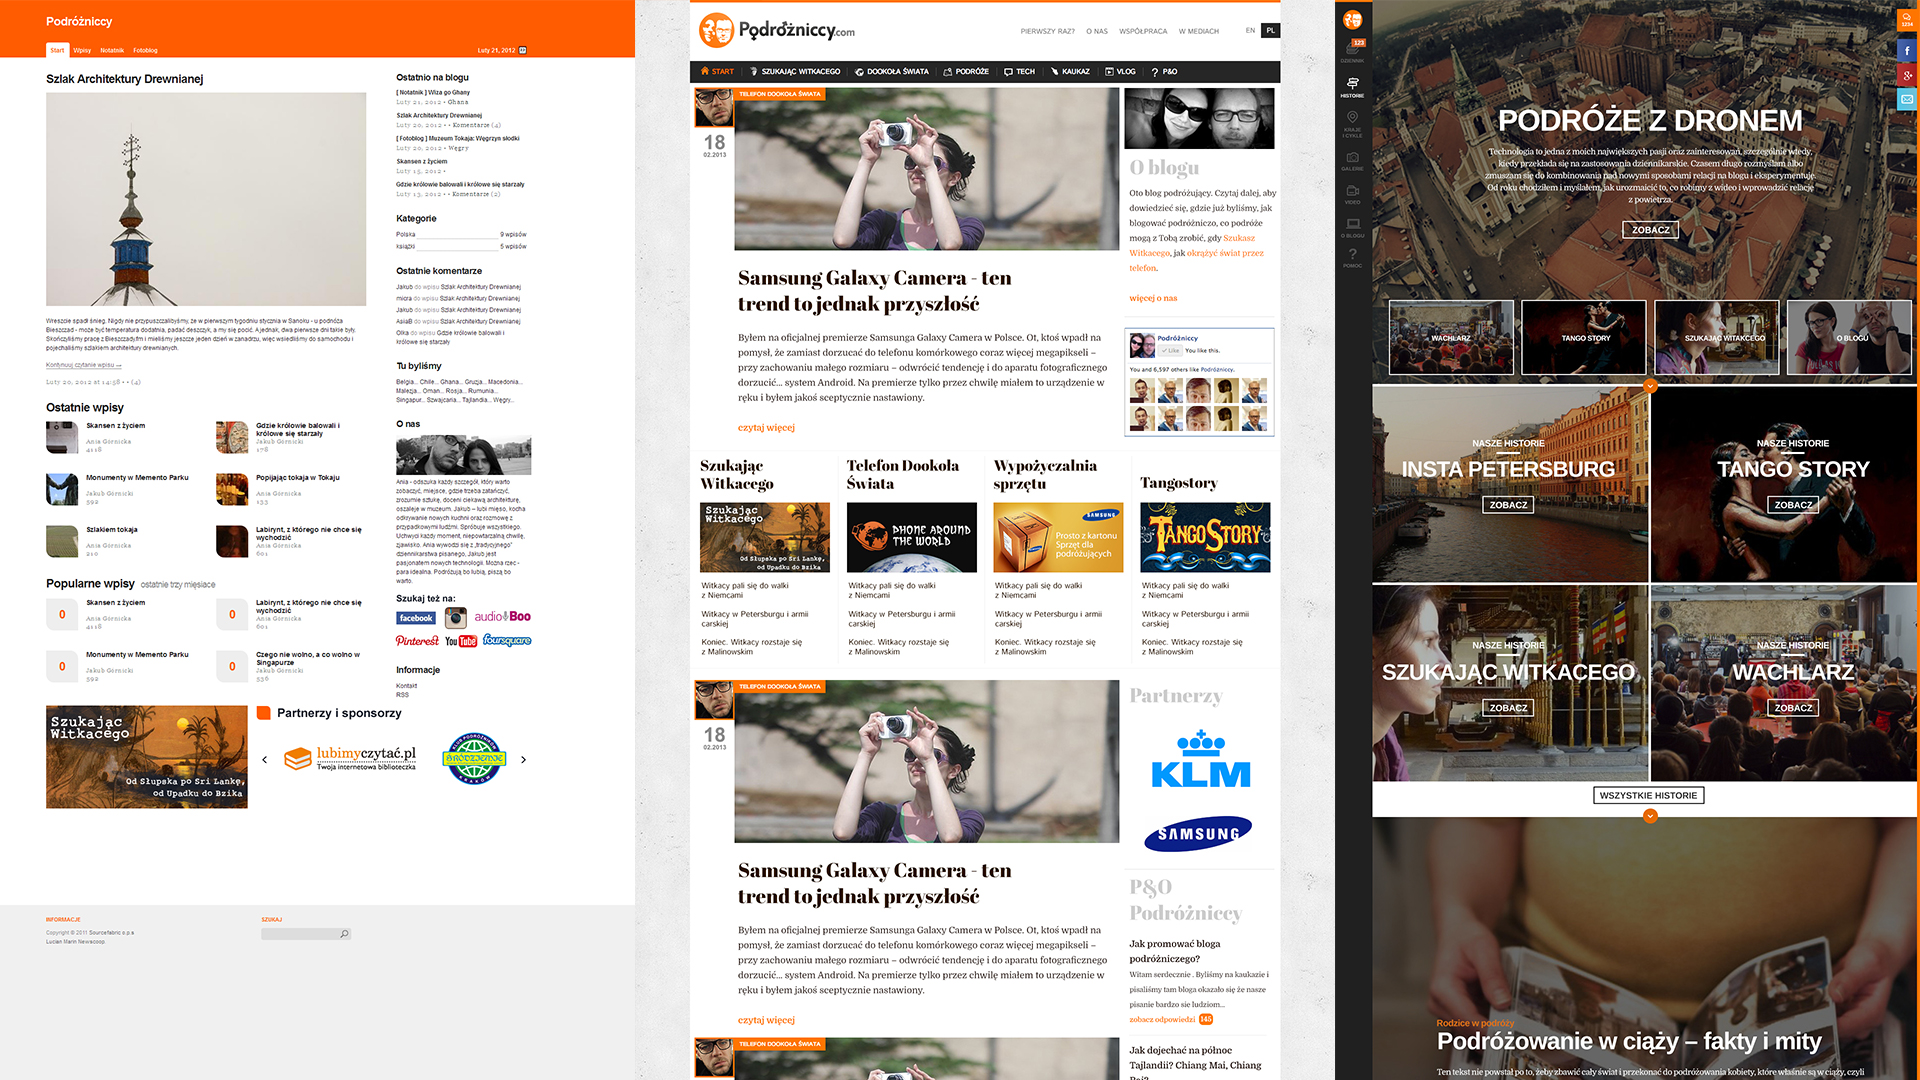 Nowy szablon bloga - Podrozniccy. Historyczne layouty. Zmiany wersji. 